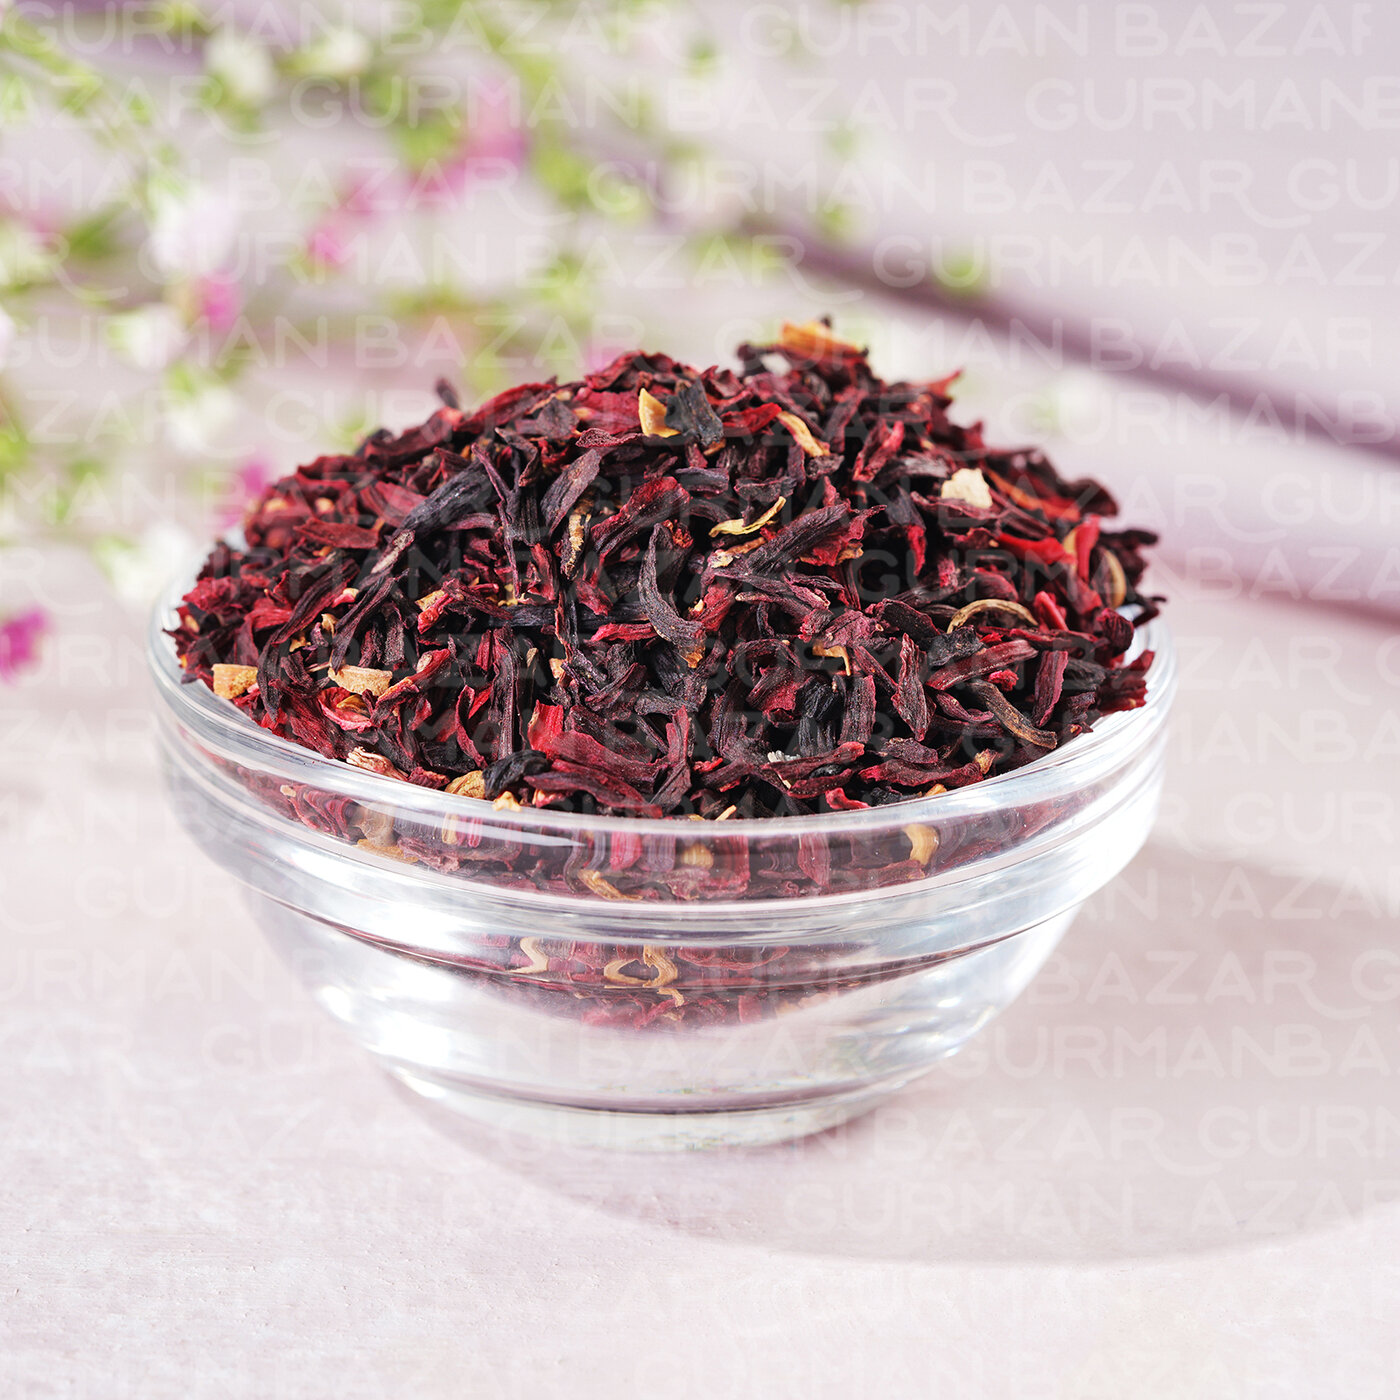 Чай листовой Ceremony каркаде (гибискус) 500 г красный листовой Измельченный 2-9 мм